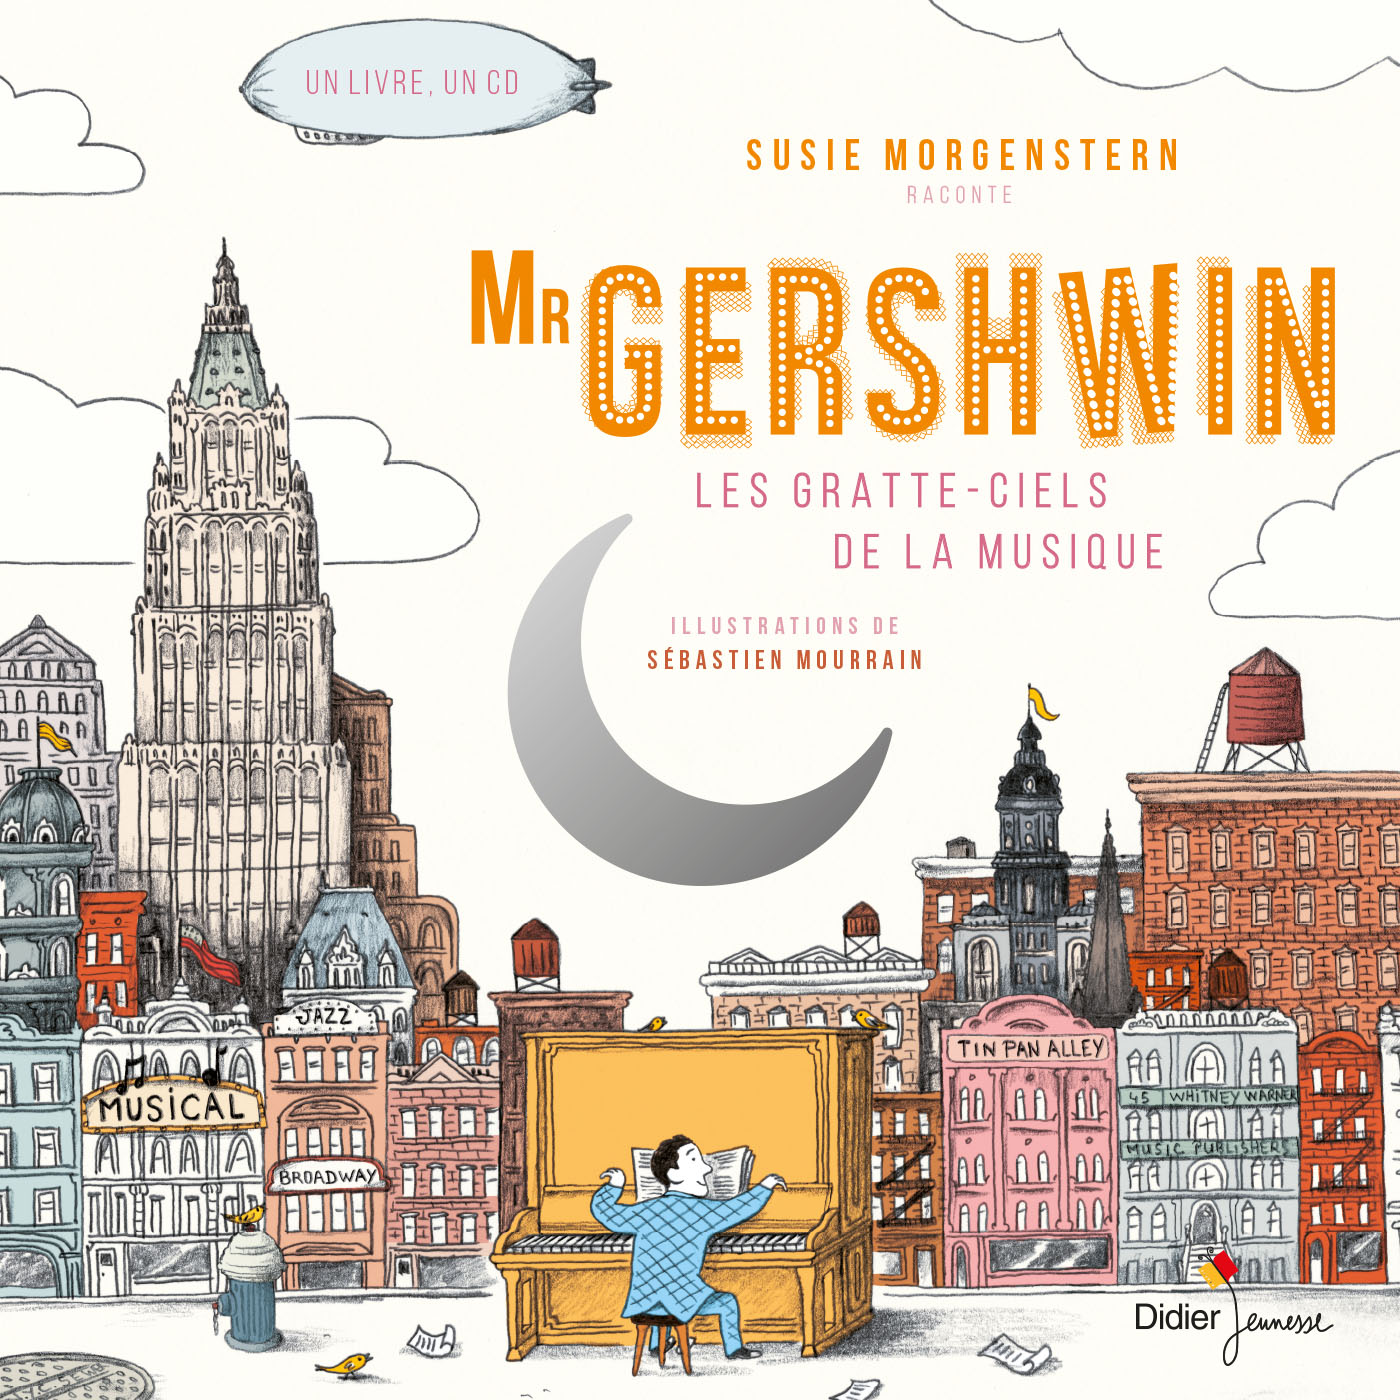 Mister Gershwin, les gratte-ciels de la musique